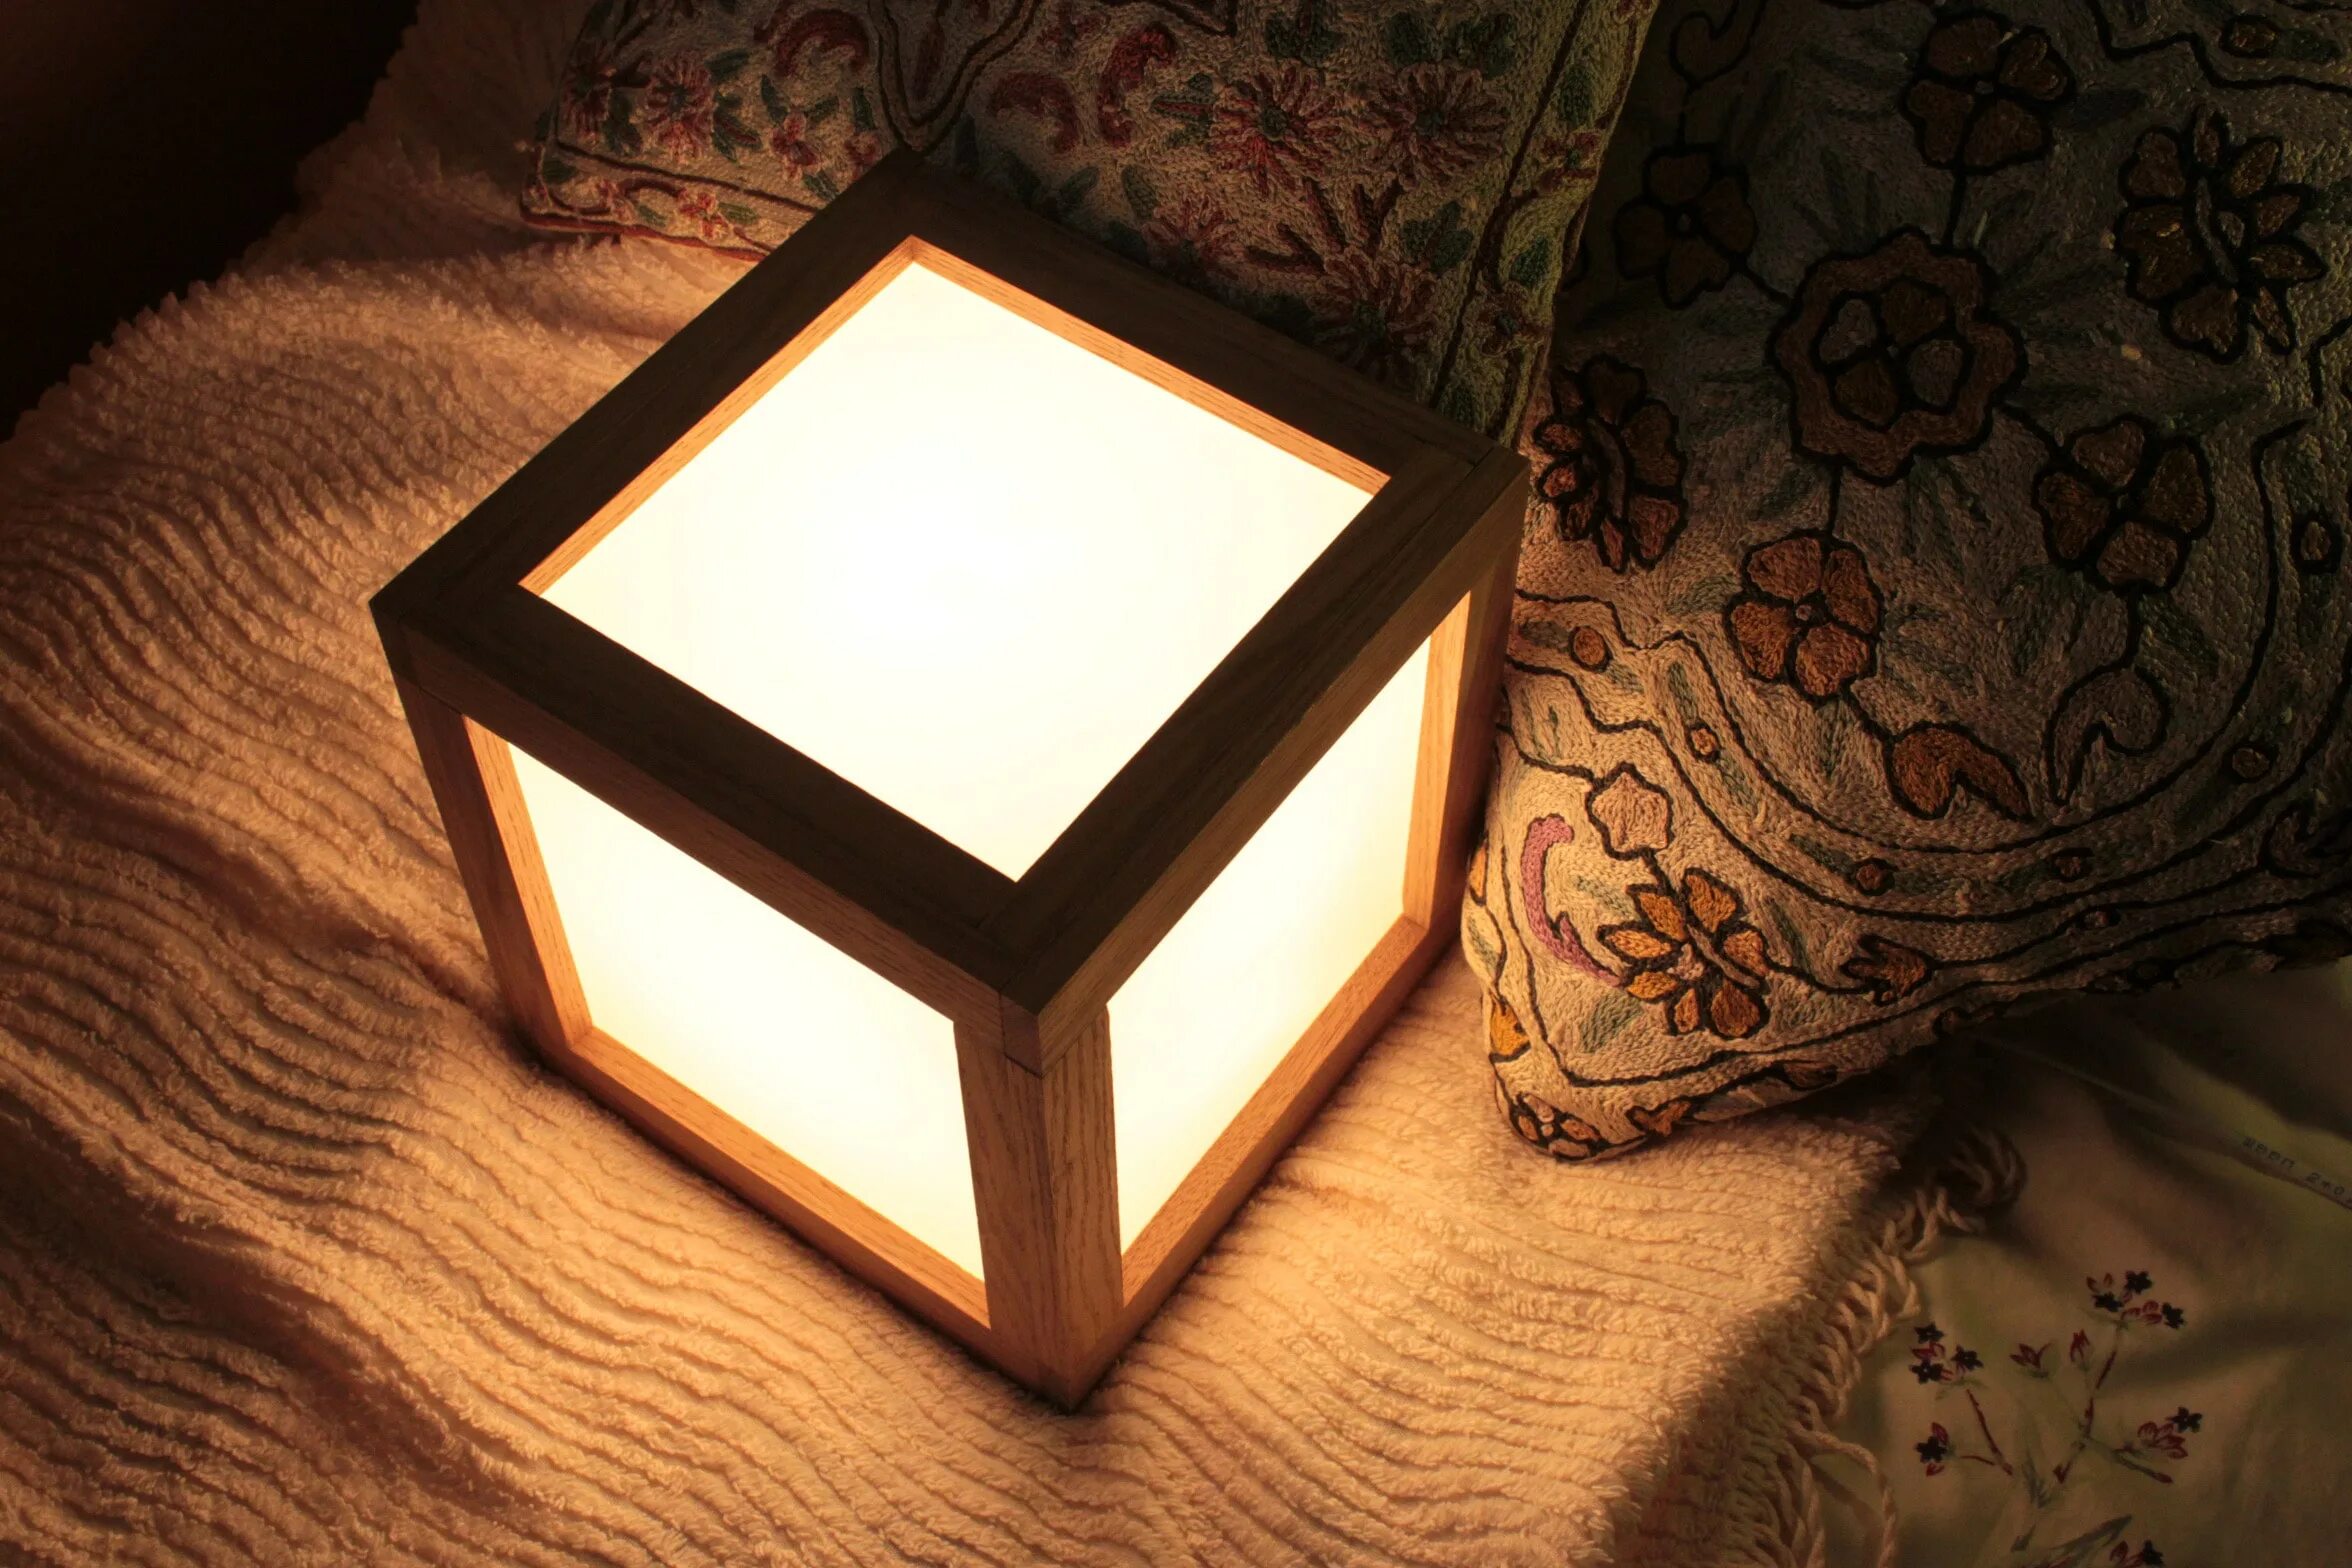 Светильник квадратный деревянный. Самодельный светильник. Светильник настольный квадратный. Светильник деревянный куб. Самодельный куб